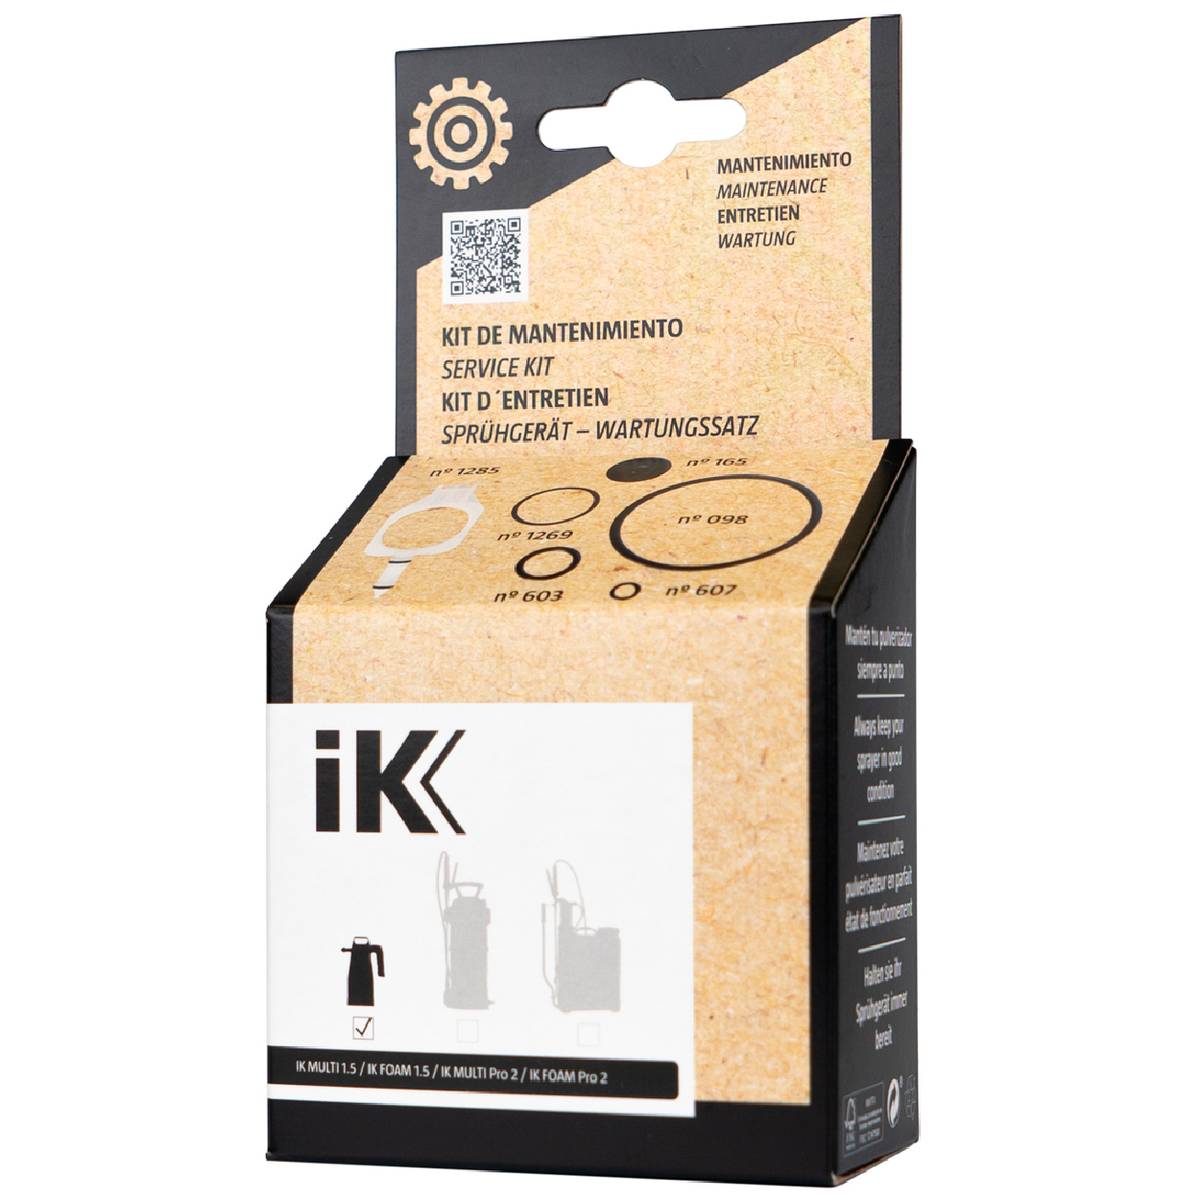 IK Sprayers maintenance kit IK MULTI / FOAM 1,5 / Pro 2 - Garasjekos.no